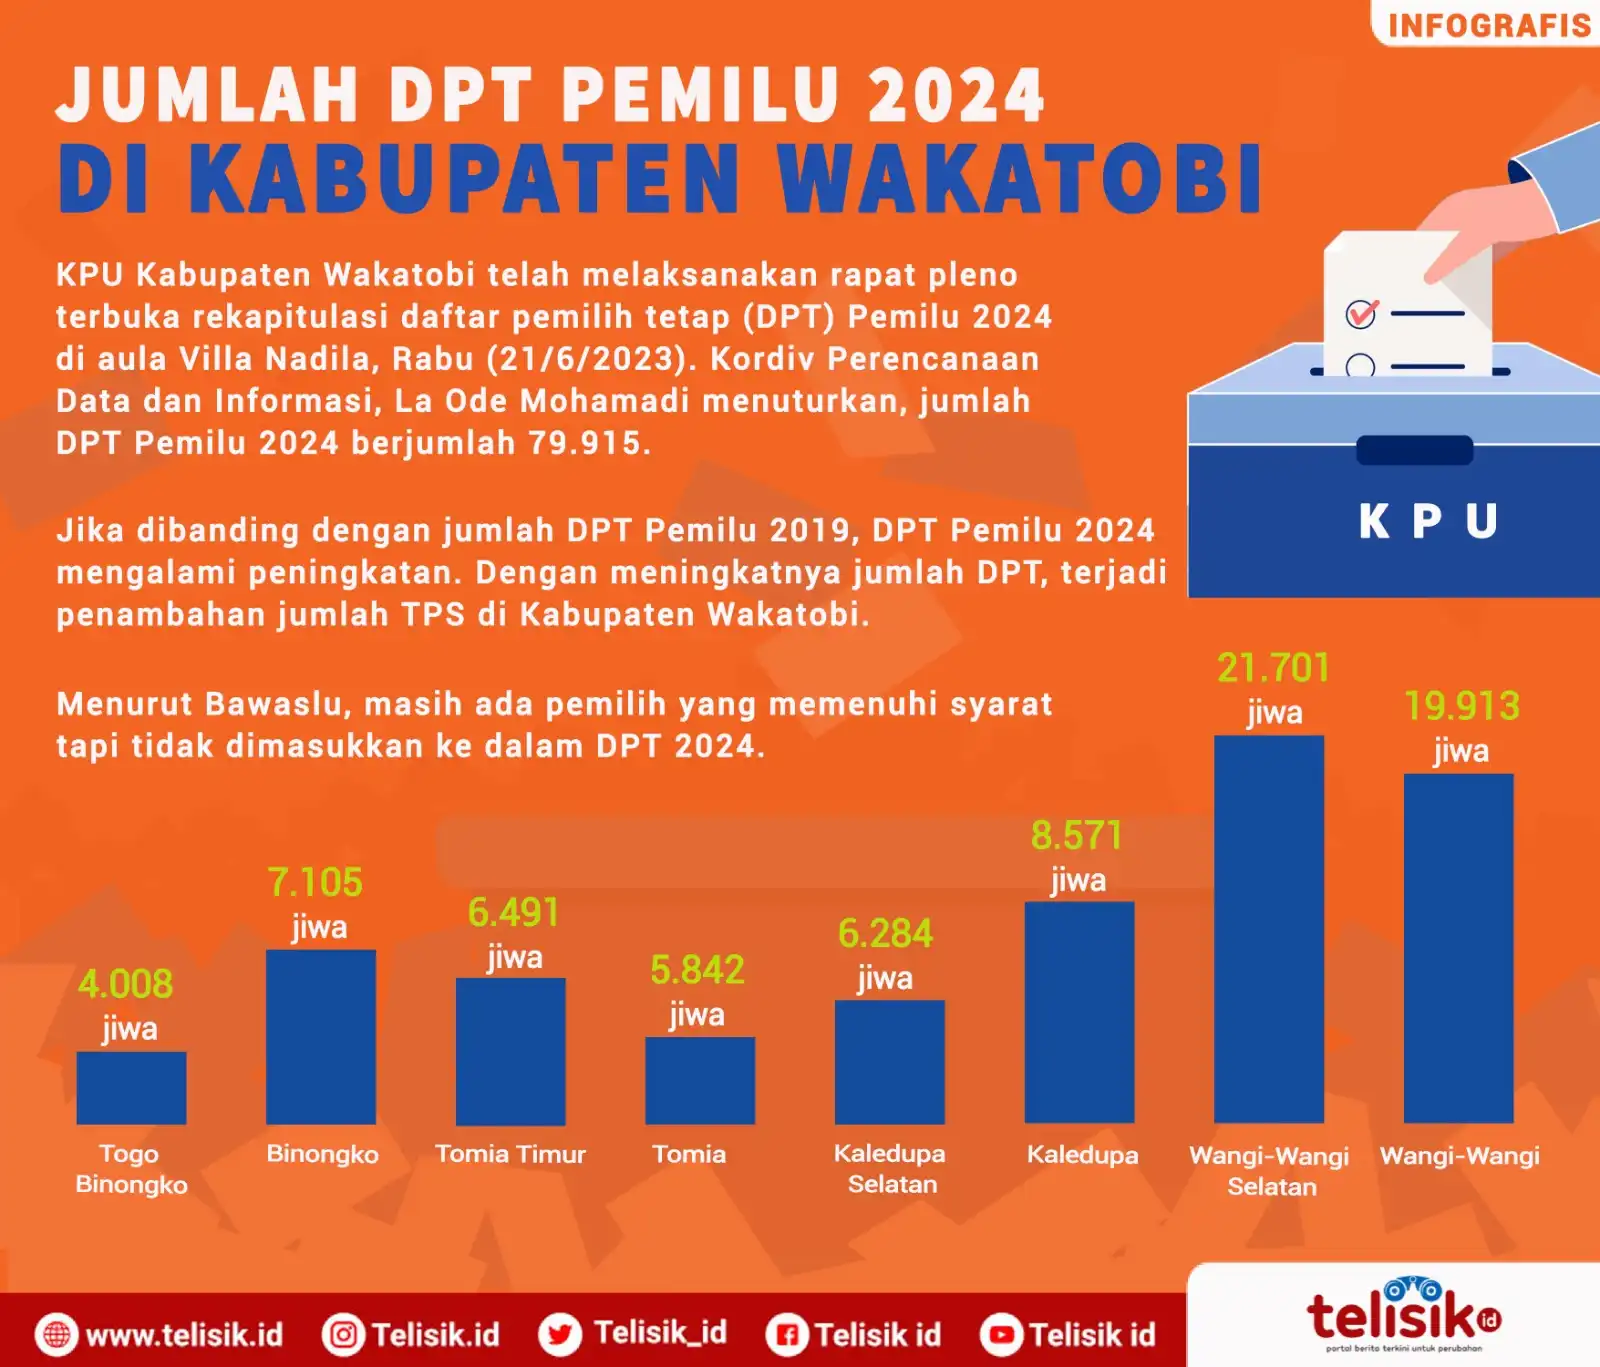 Infografis: Jumlah DPT Pemilu 2024 di Kabupaten Wakatobi 